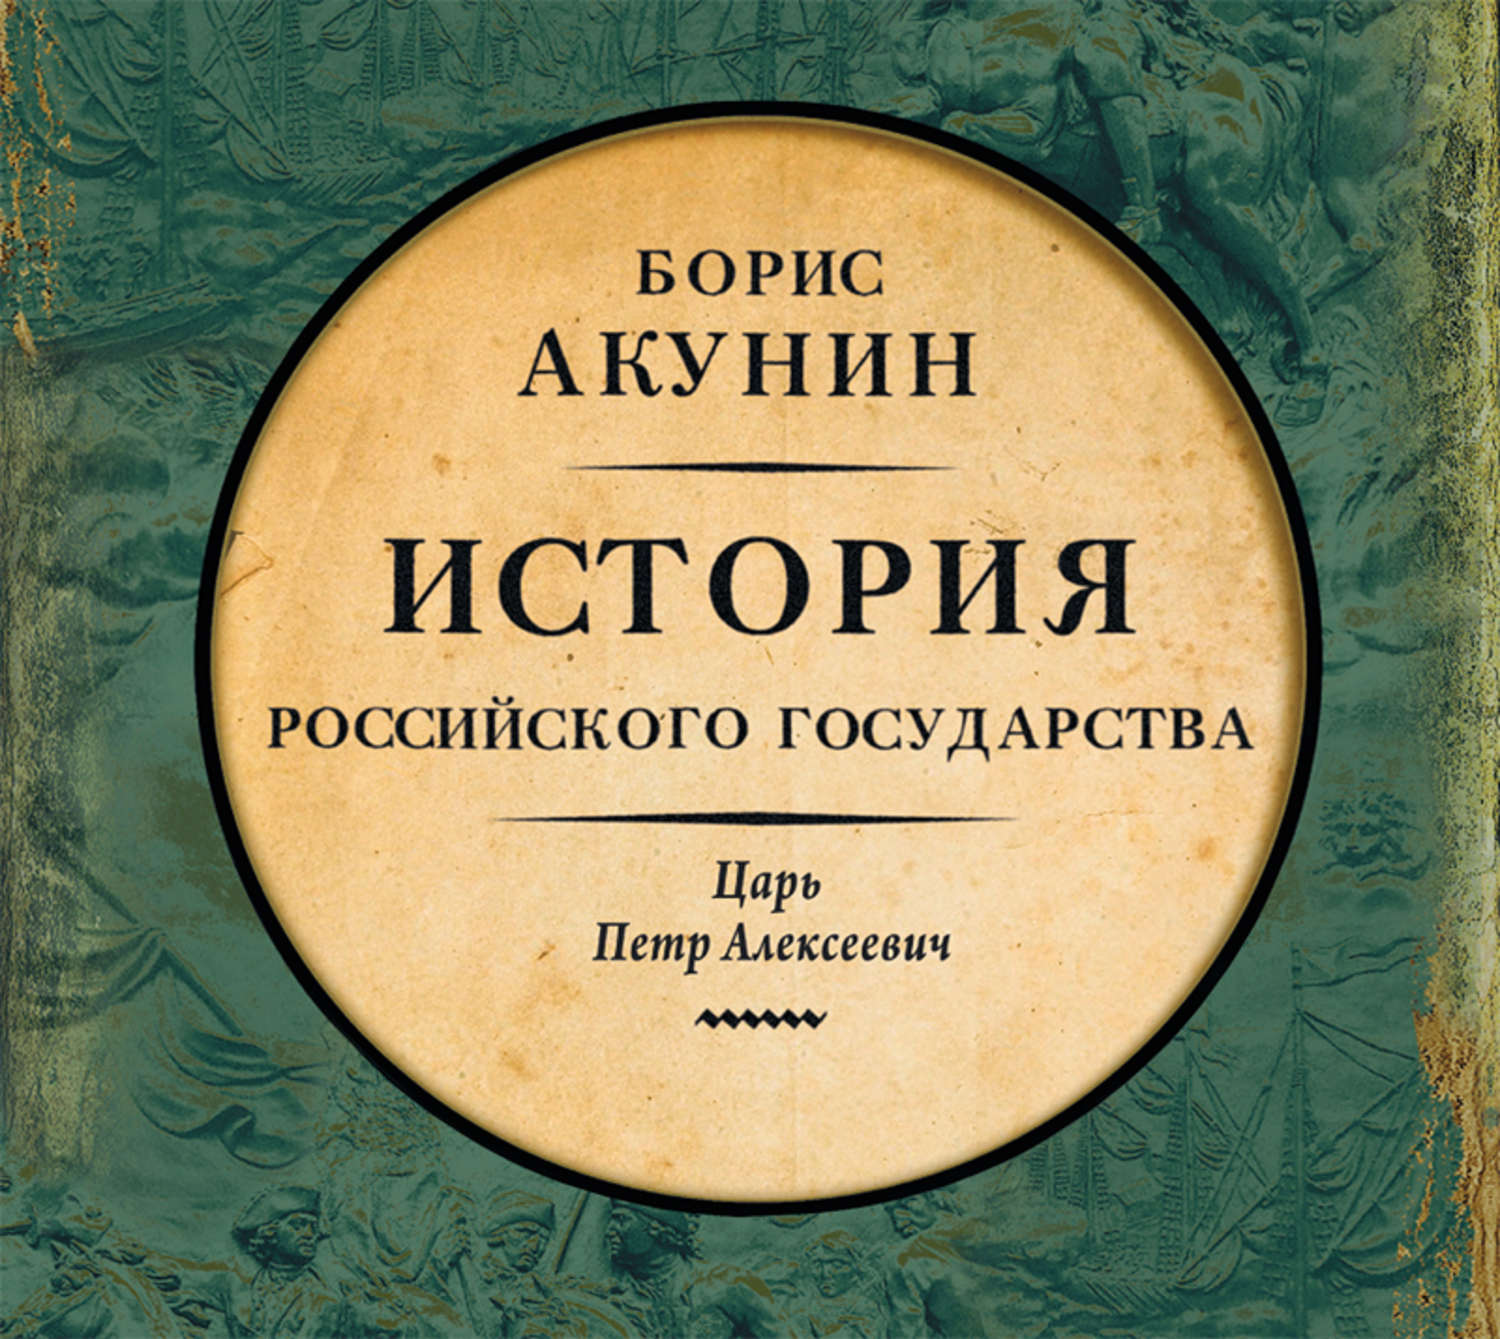 Борис акунин сборник книг скачать бесплатно txt